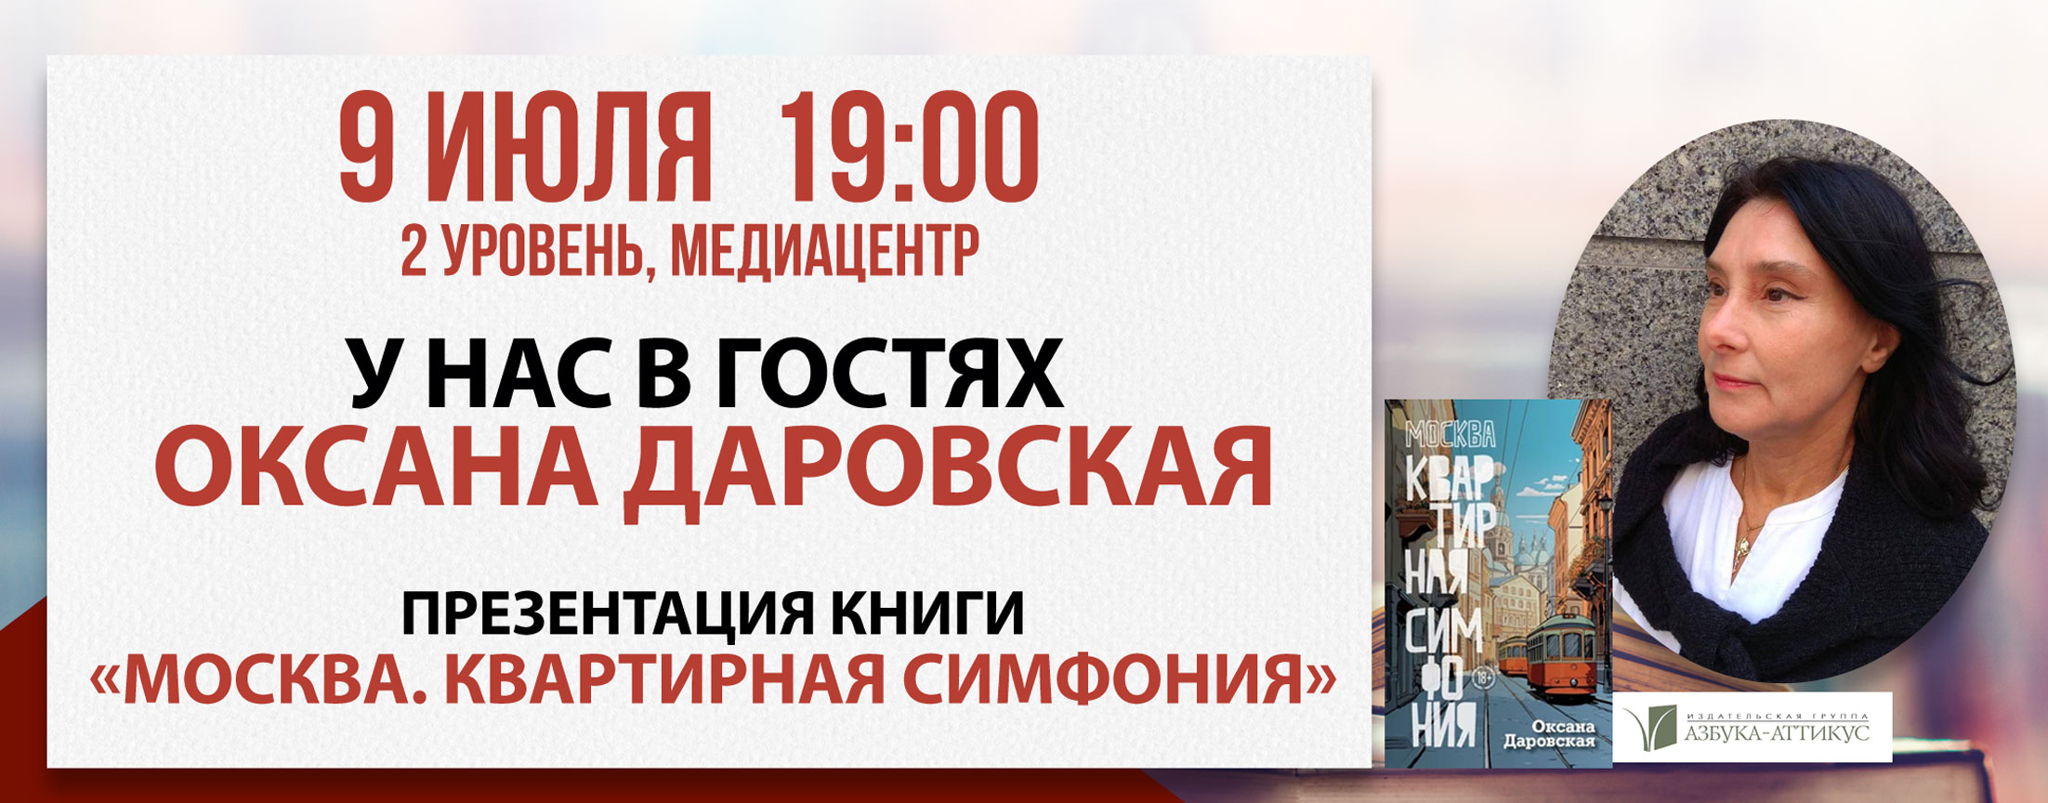 Презентация книги «Москва. Квартирная симфония»